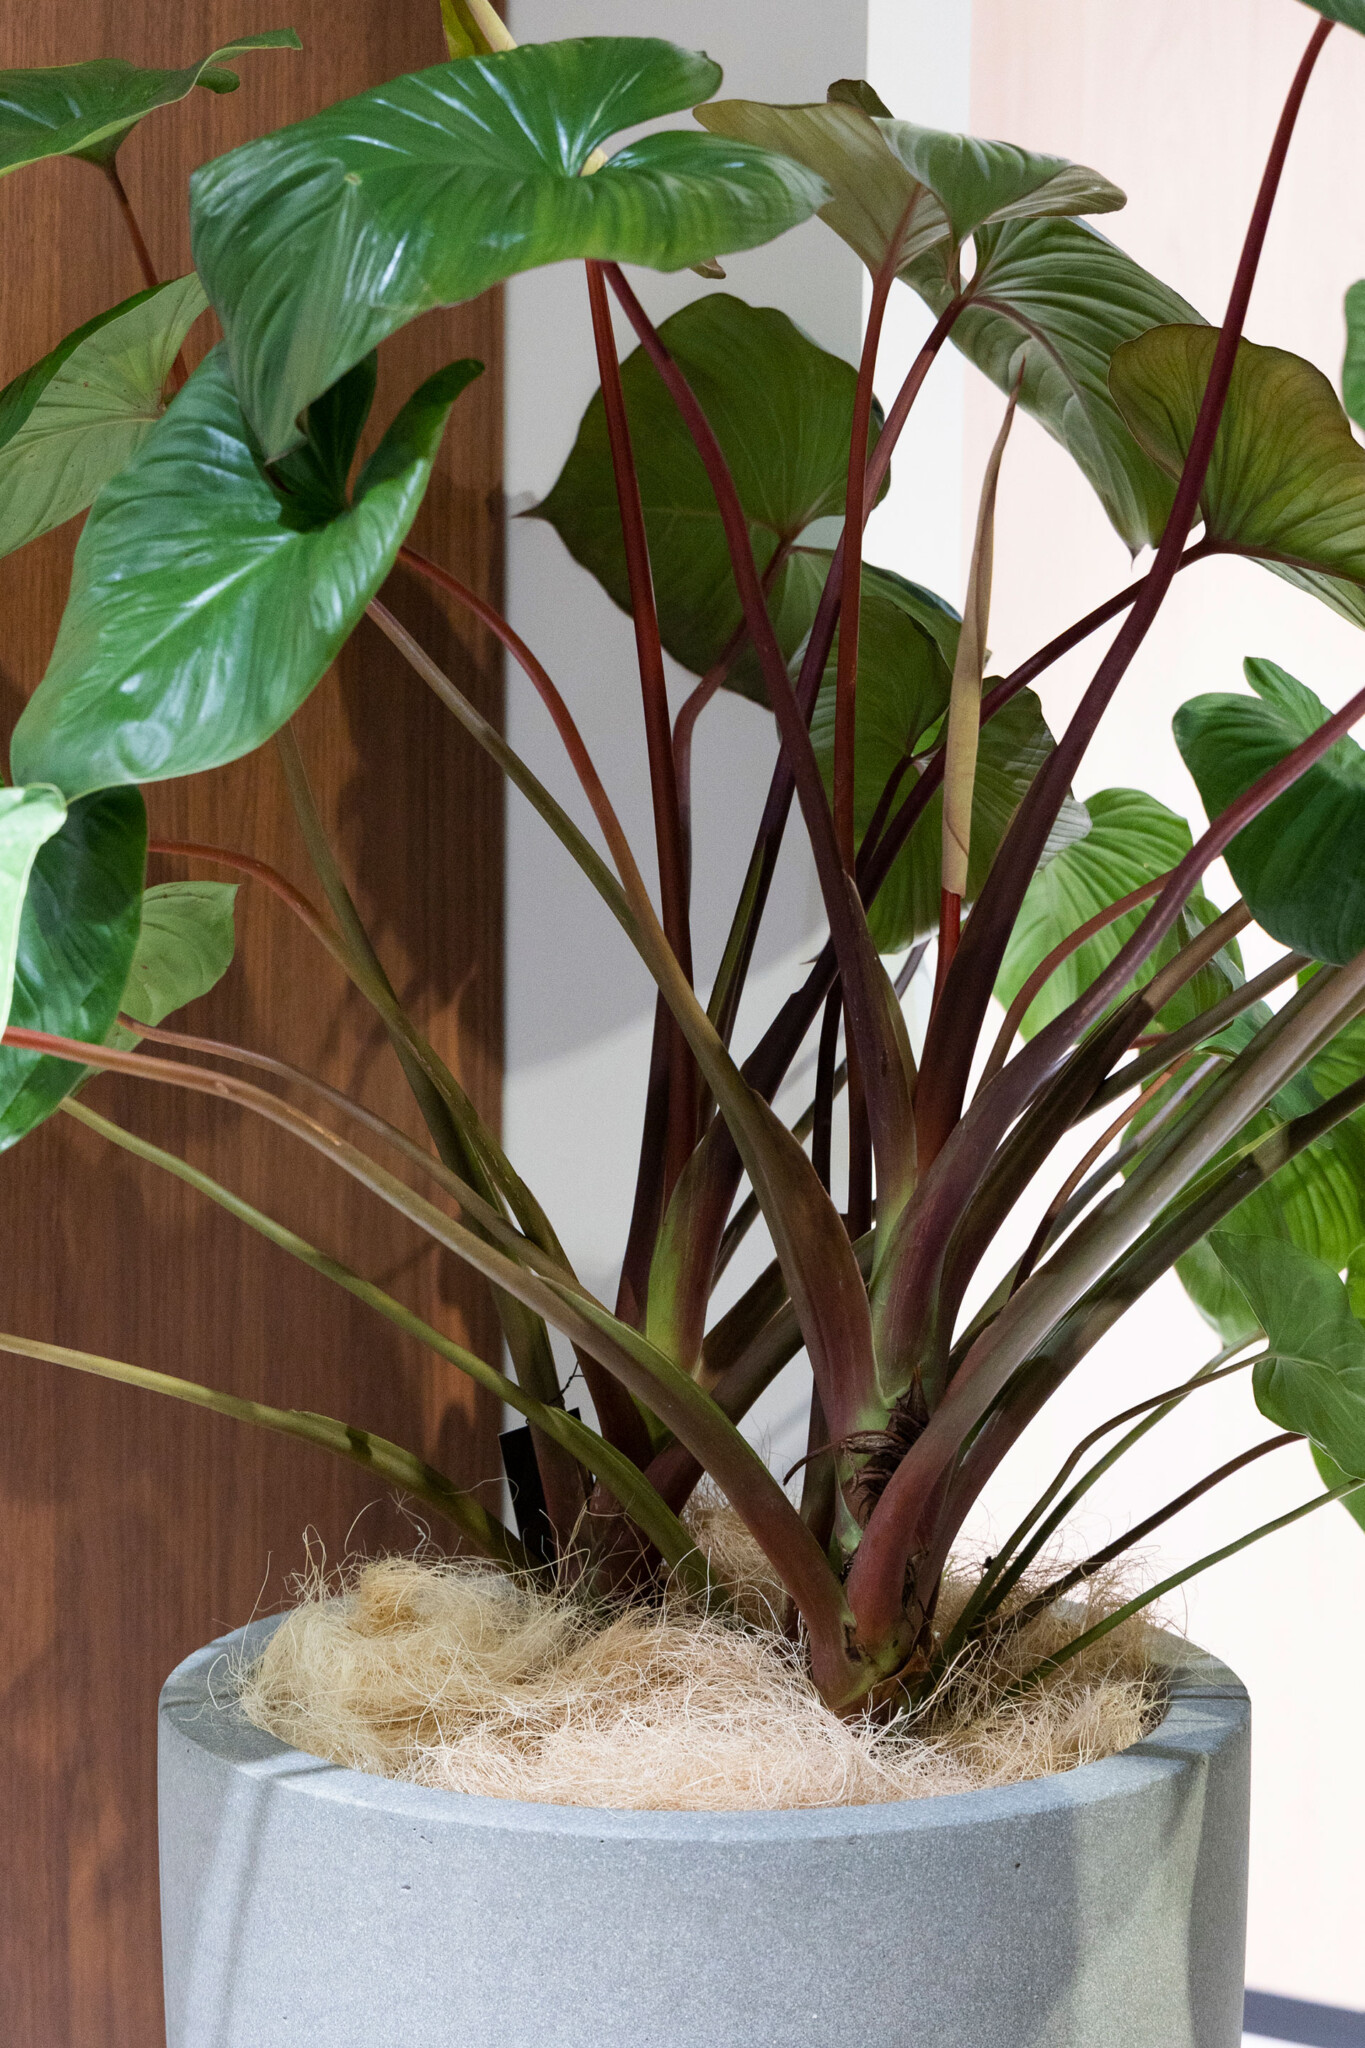 ホマロメナの赤い茎がエキゾチックな魅力を放つ。ココヤシファイバーでプランターと鉢の間の目隠しをする。